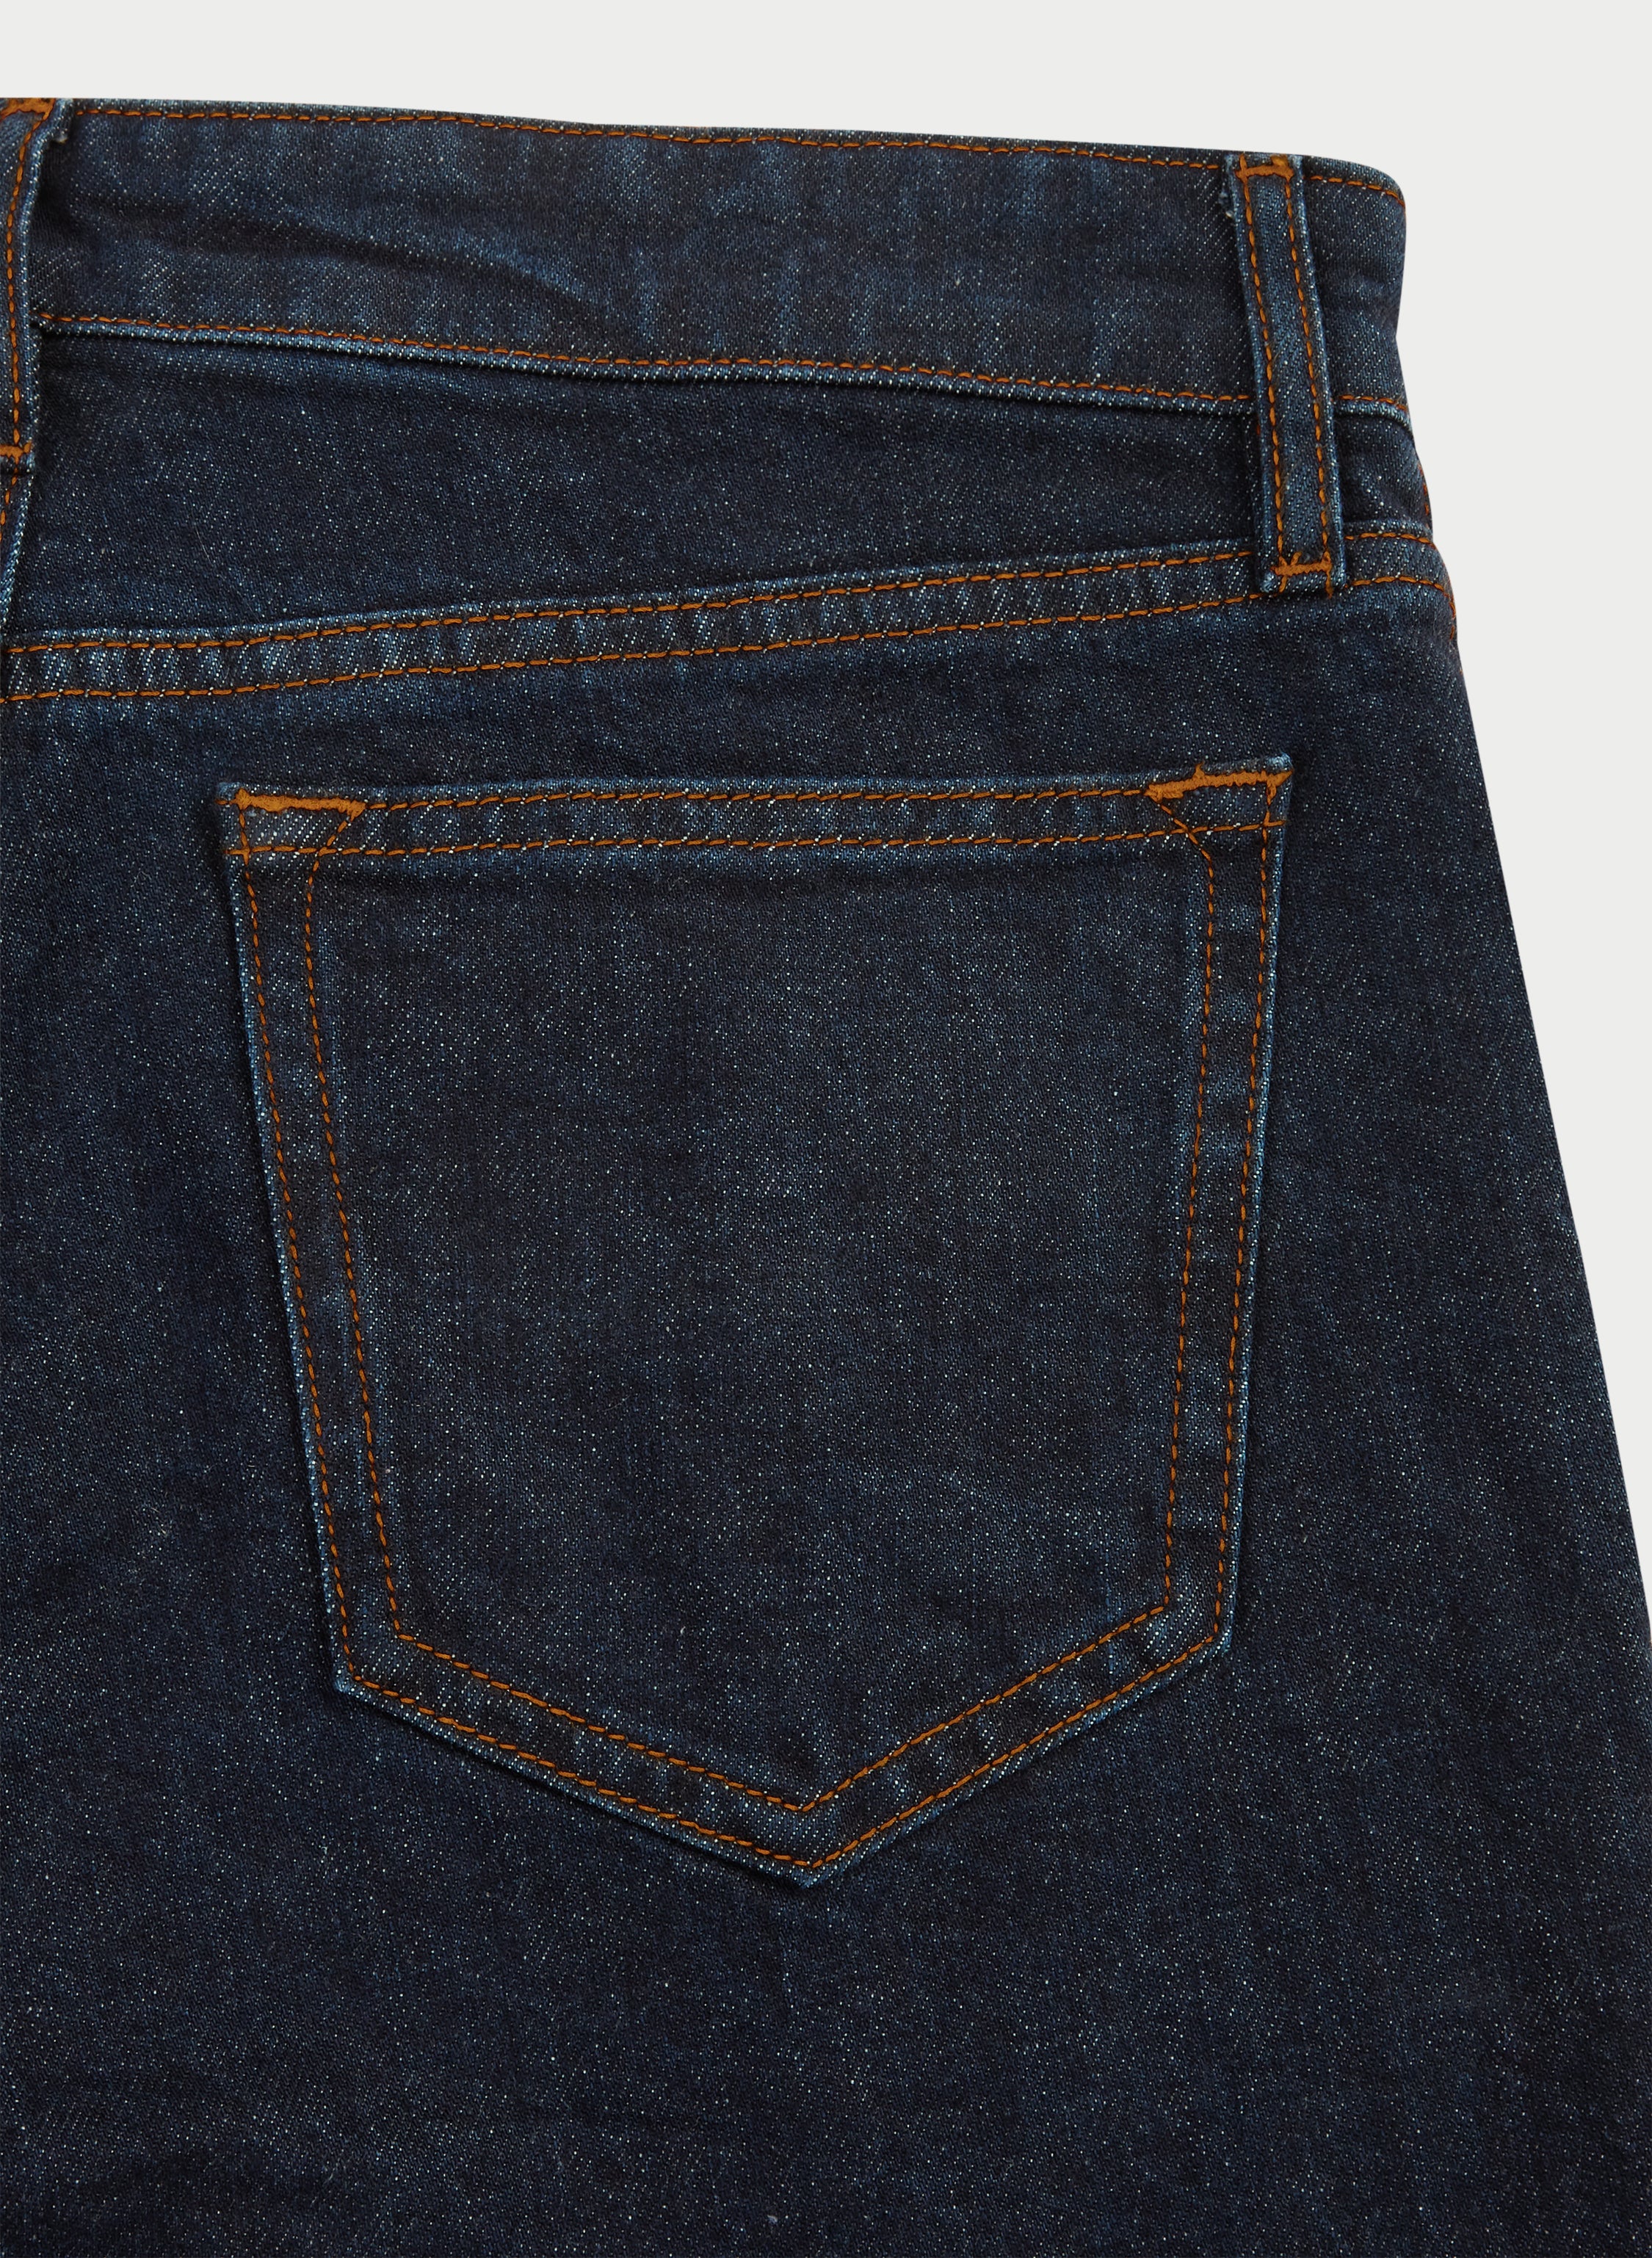 Five Pocket Denim Jeans Dark Blue Back Pocket Detail